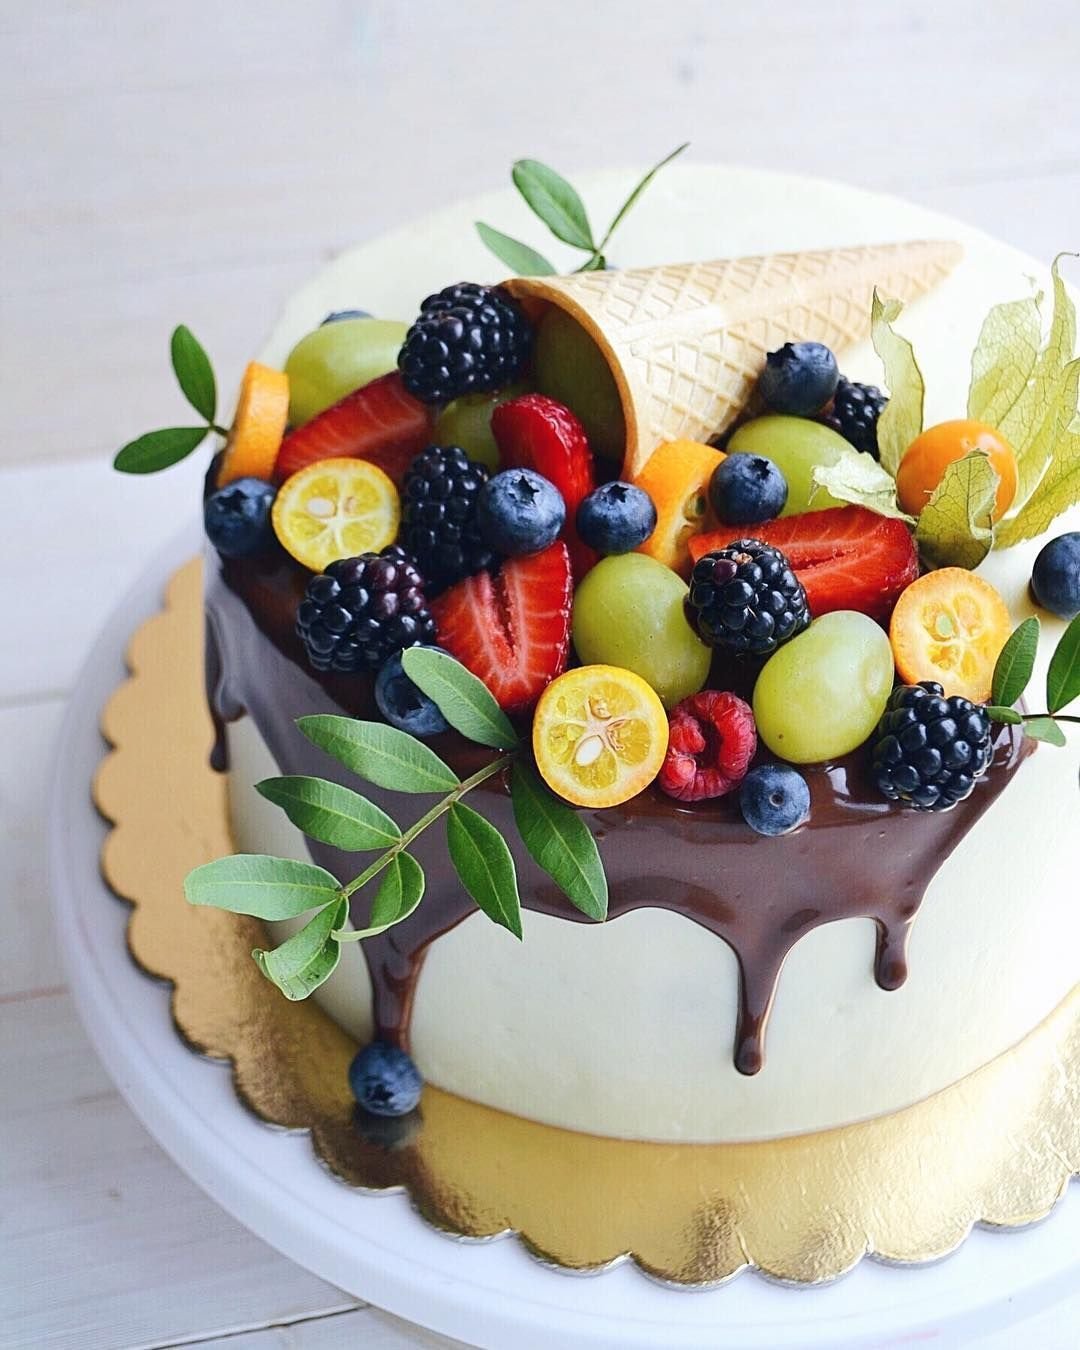 Учимся украшать торт фруктами в домашних условиях: идеи, советы, фото